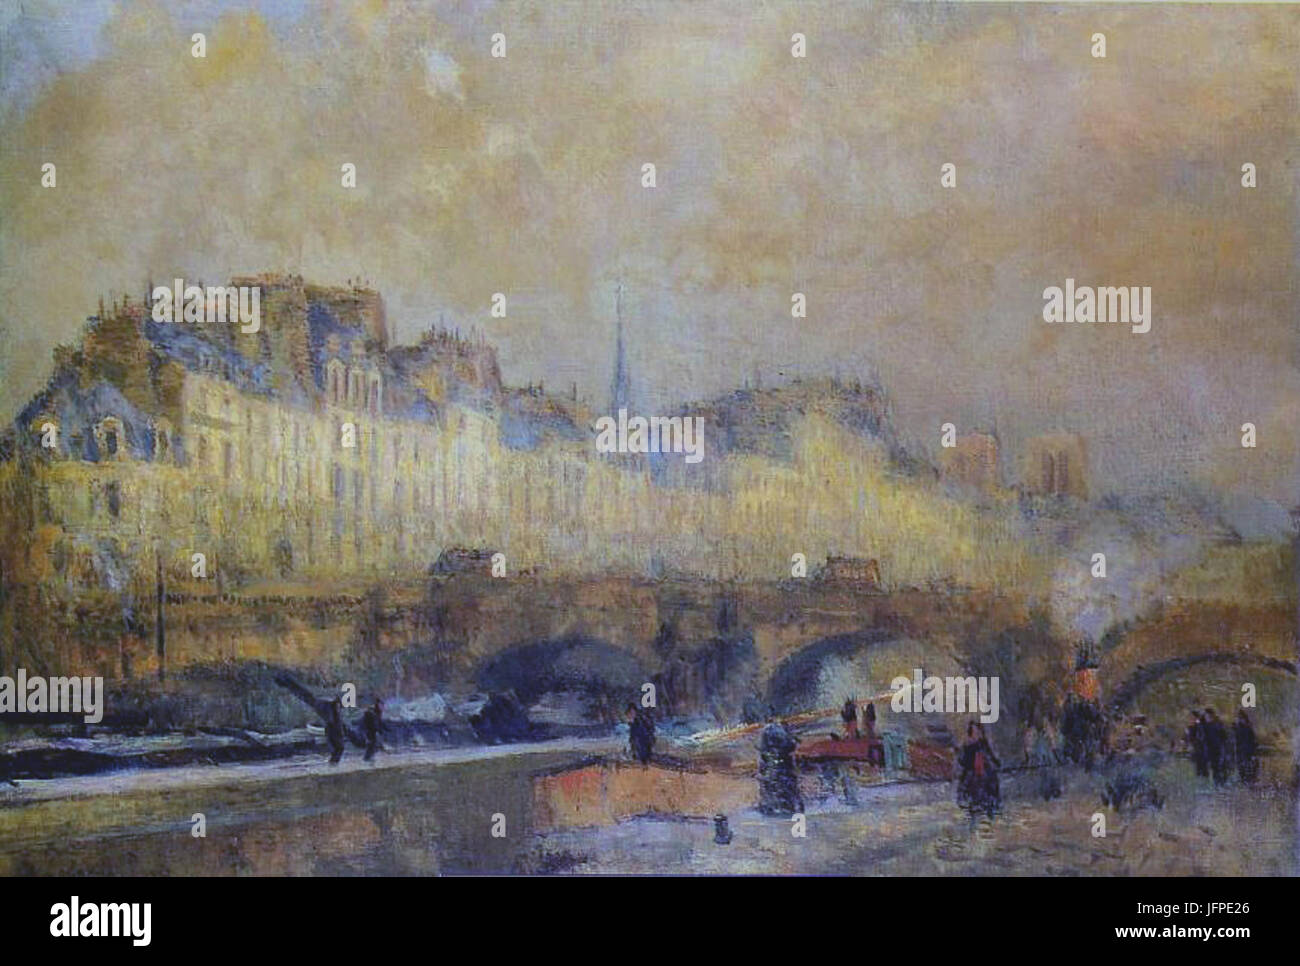 Albert Lebourg, before 1918, Paris, l'écluse de la Monnaie. Soleil d'hiver, oil on canvas, 81.5 x 115.5 cm, Musée d'Orsay, Paris. Stock Photo